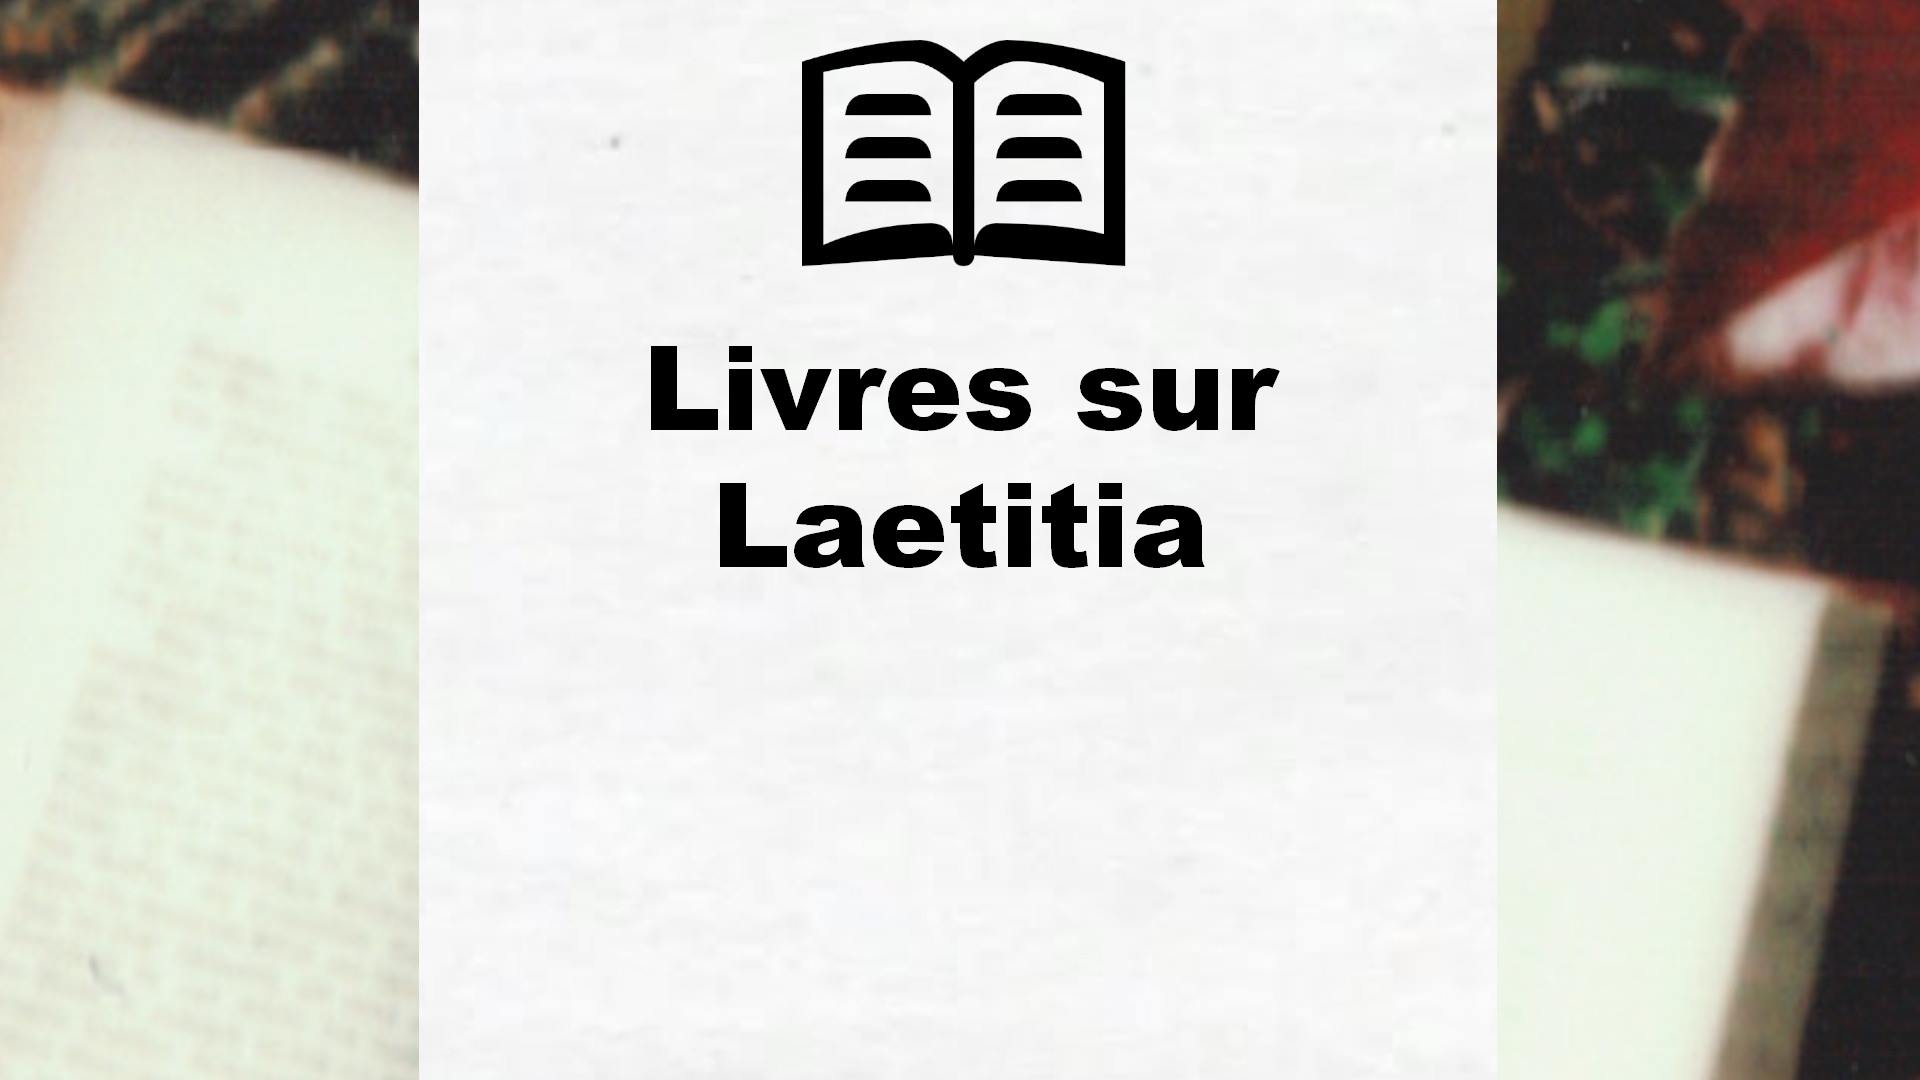 Livres sur Laetitia